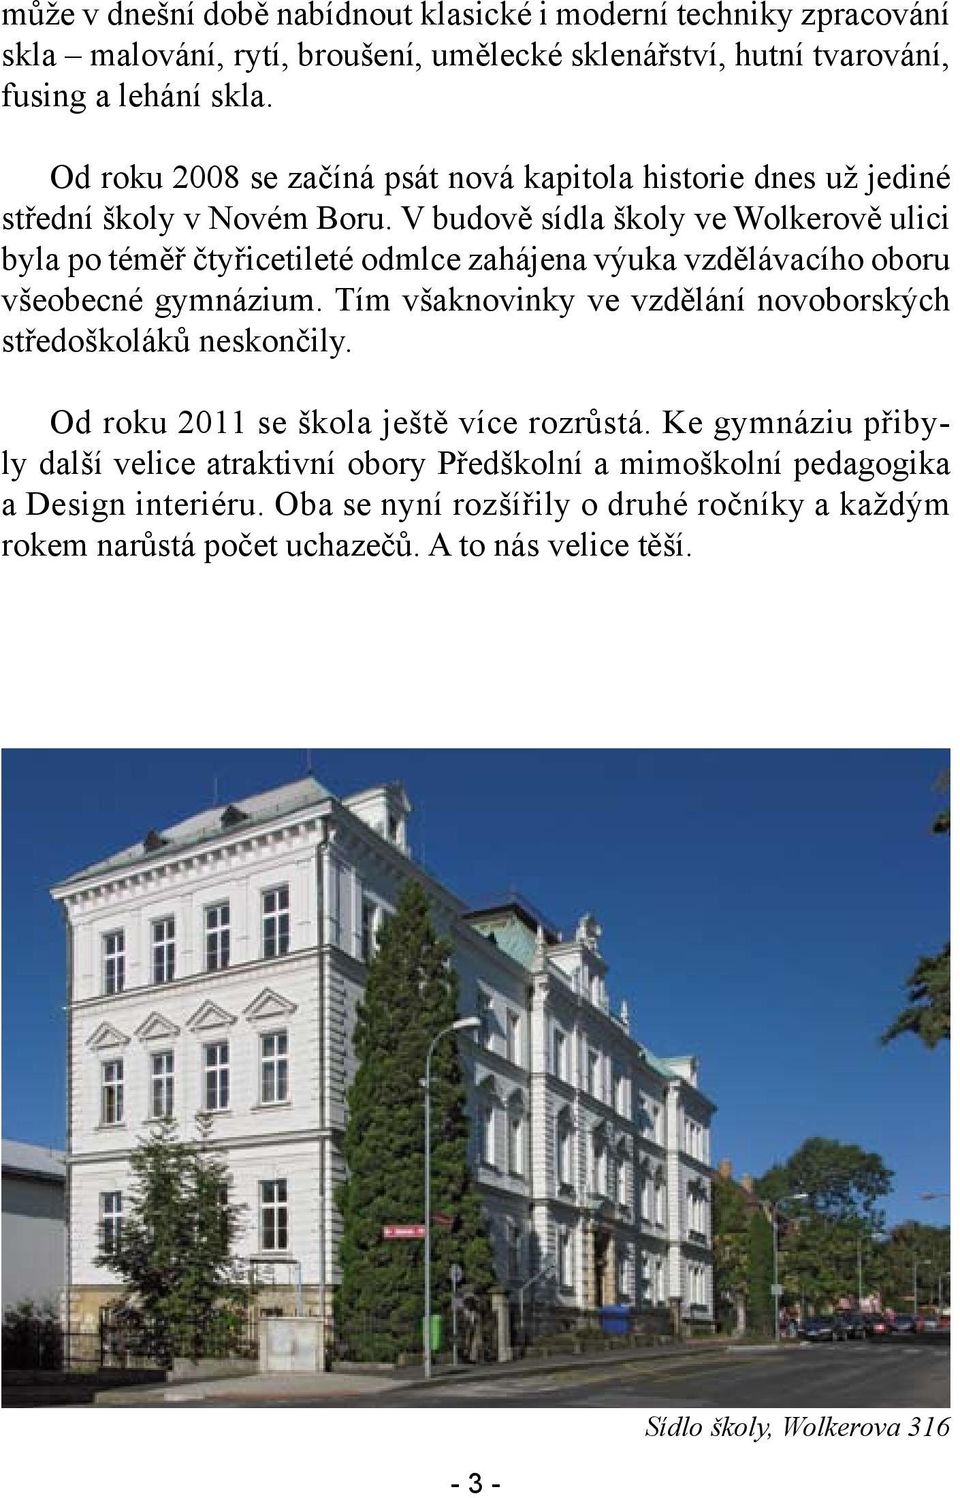 V budově sídla školy ve Wolkerově ulici byla po téměř čtyřicetileté odmlce zahájena výuka vzdělávacího oboru všeobecné gymnázium.